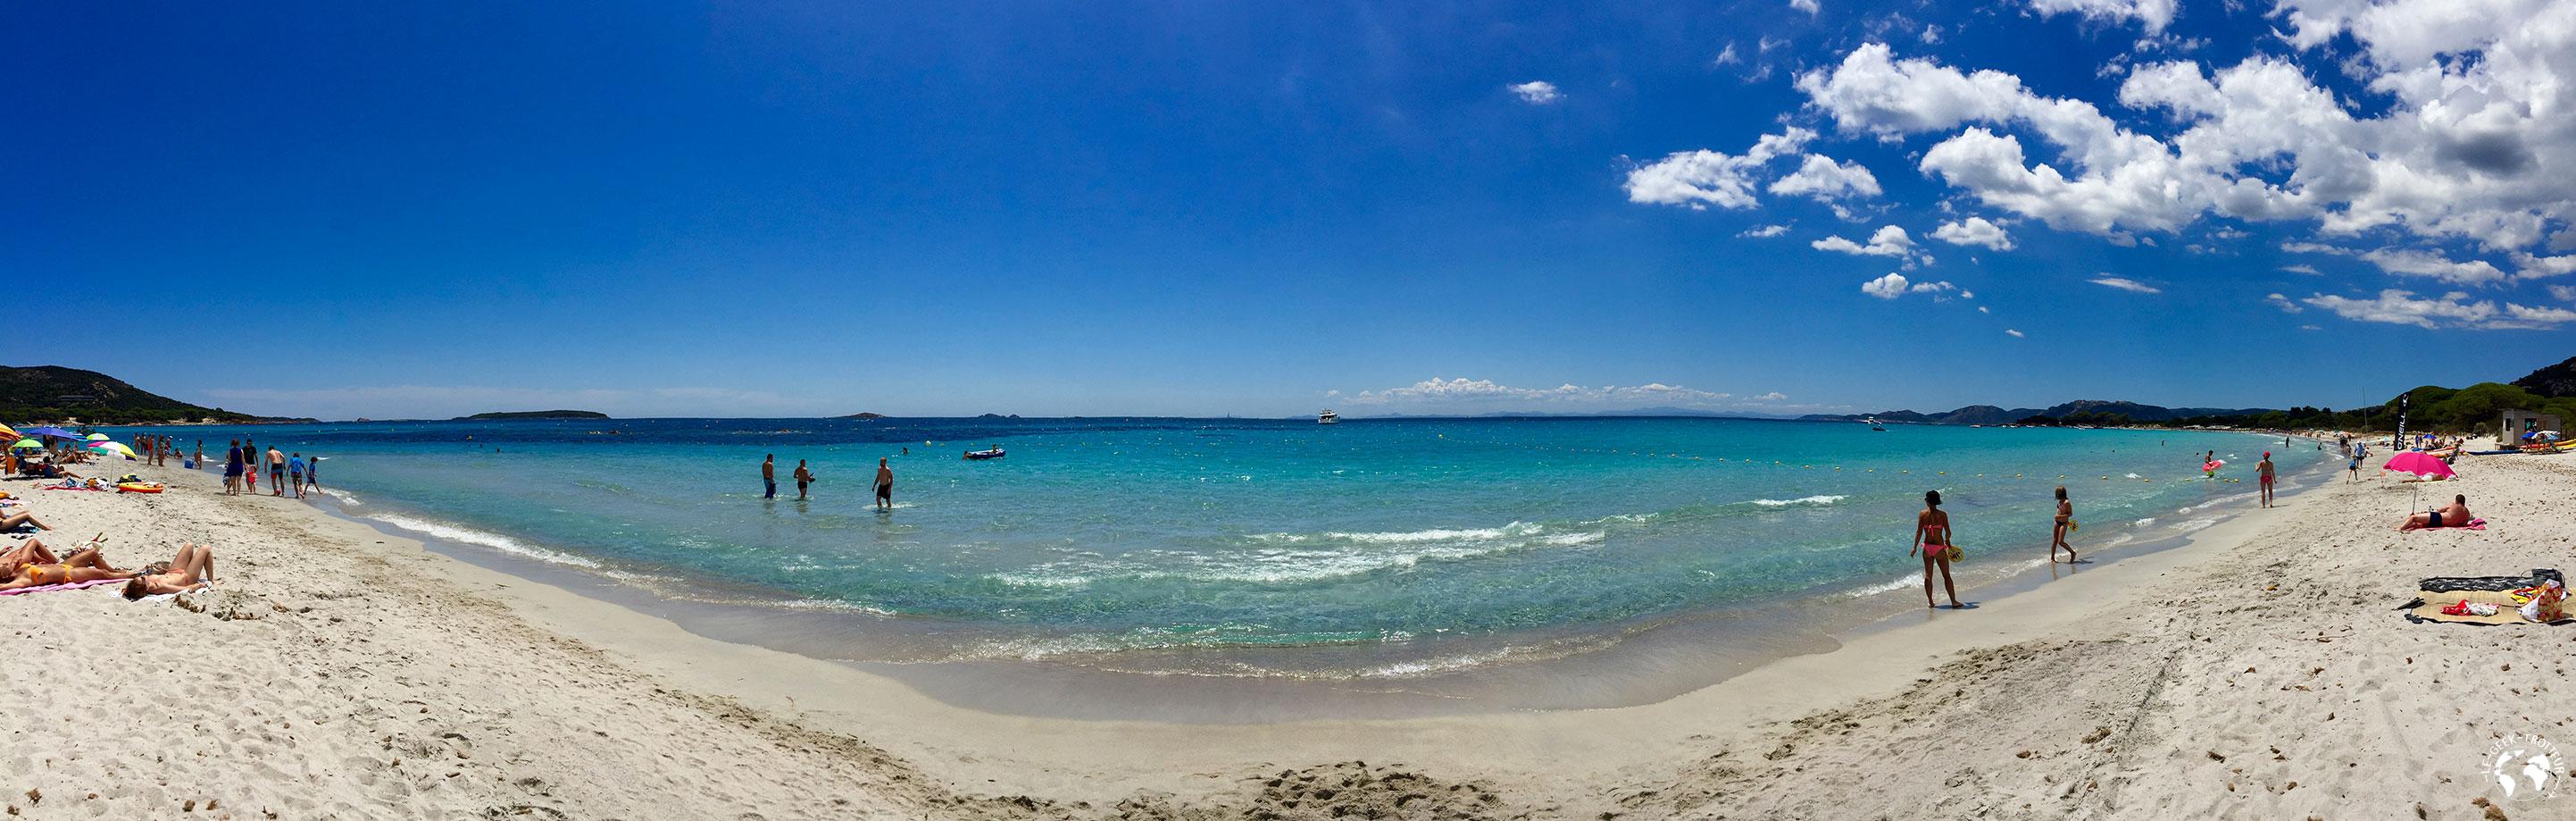 La plage de Palombaggia en Corse